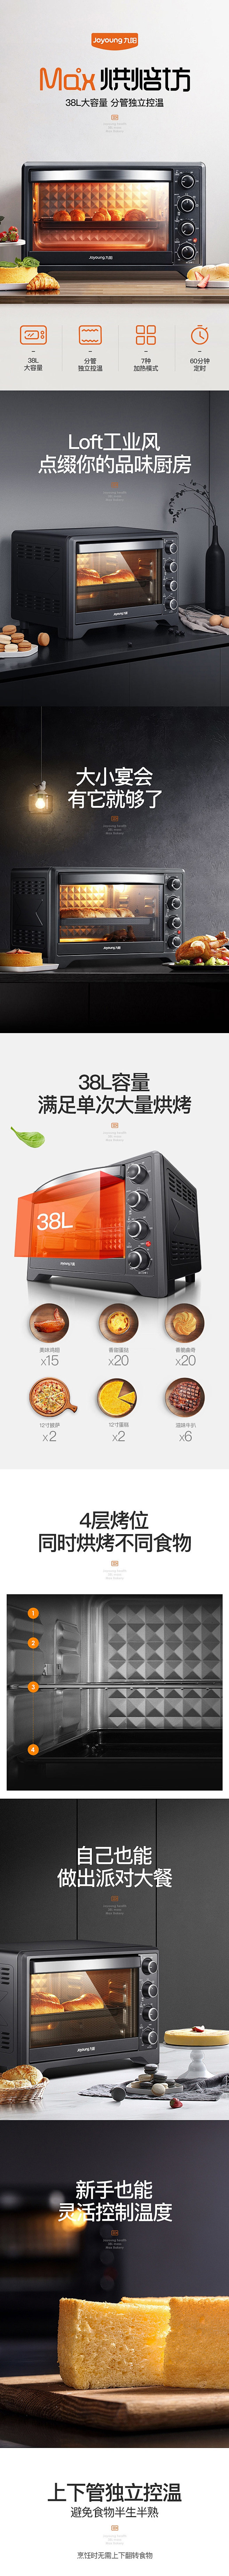 九阳 电烤箱 电器 家电 产品详情页设计